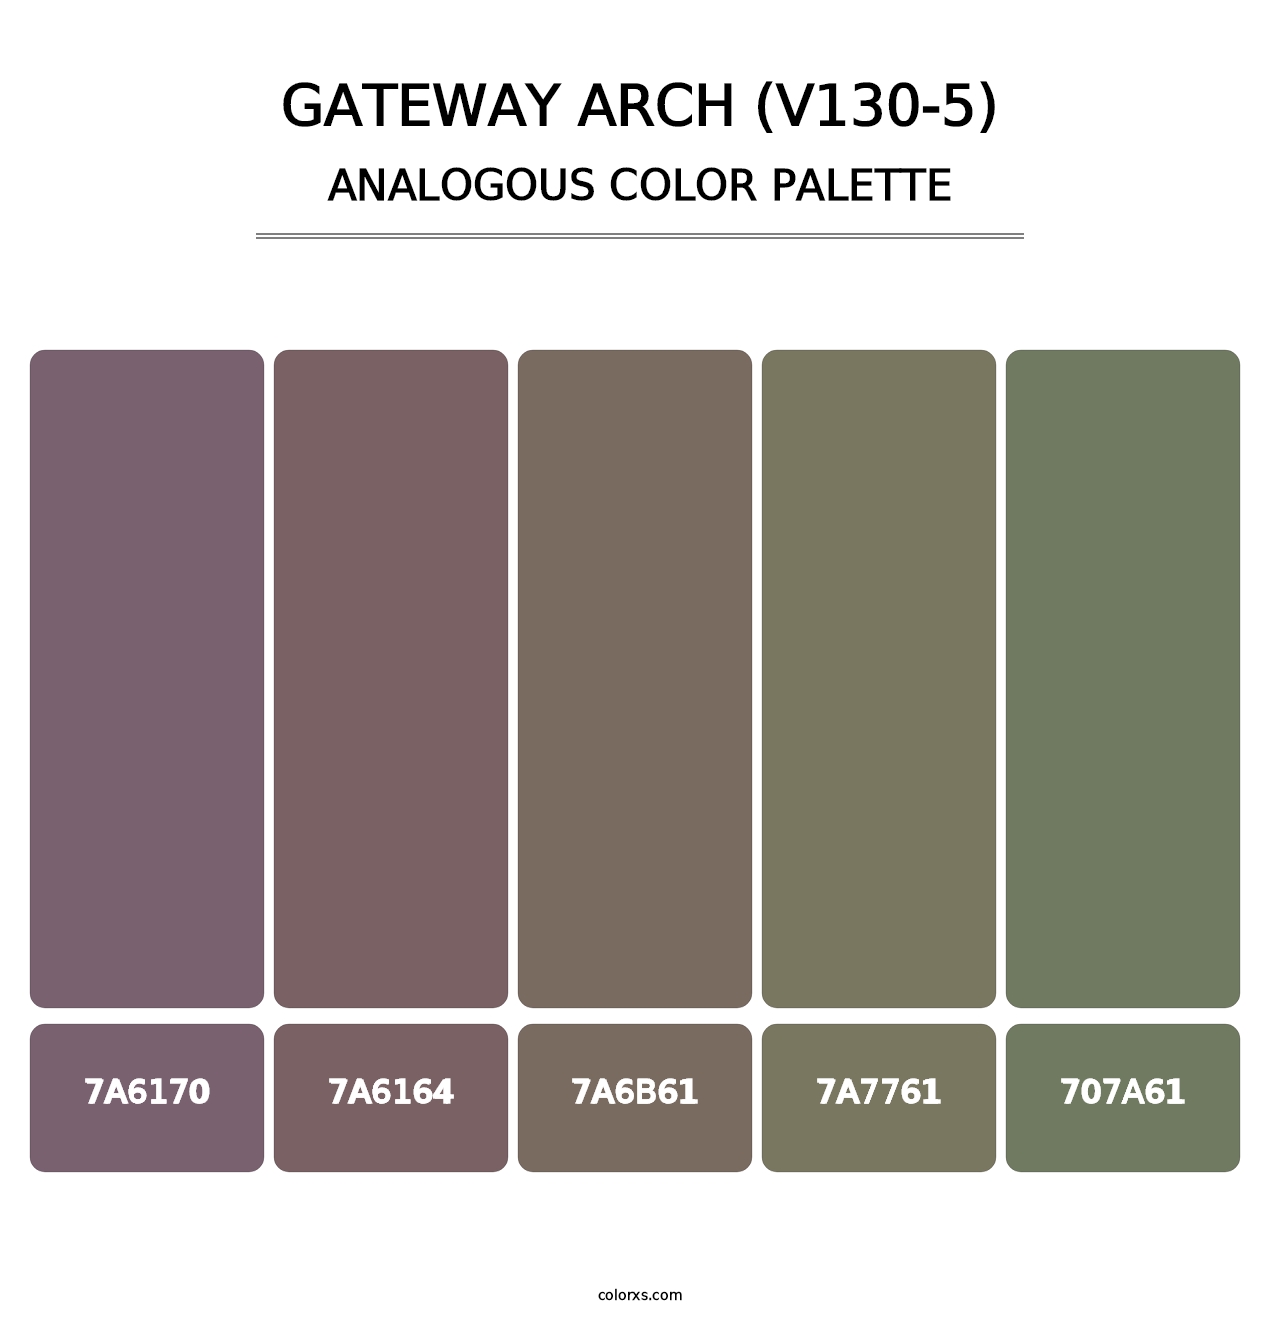 Gateway Arch (V130-5) - Analogous Color Palette